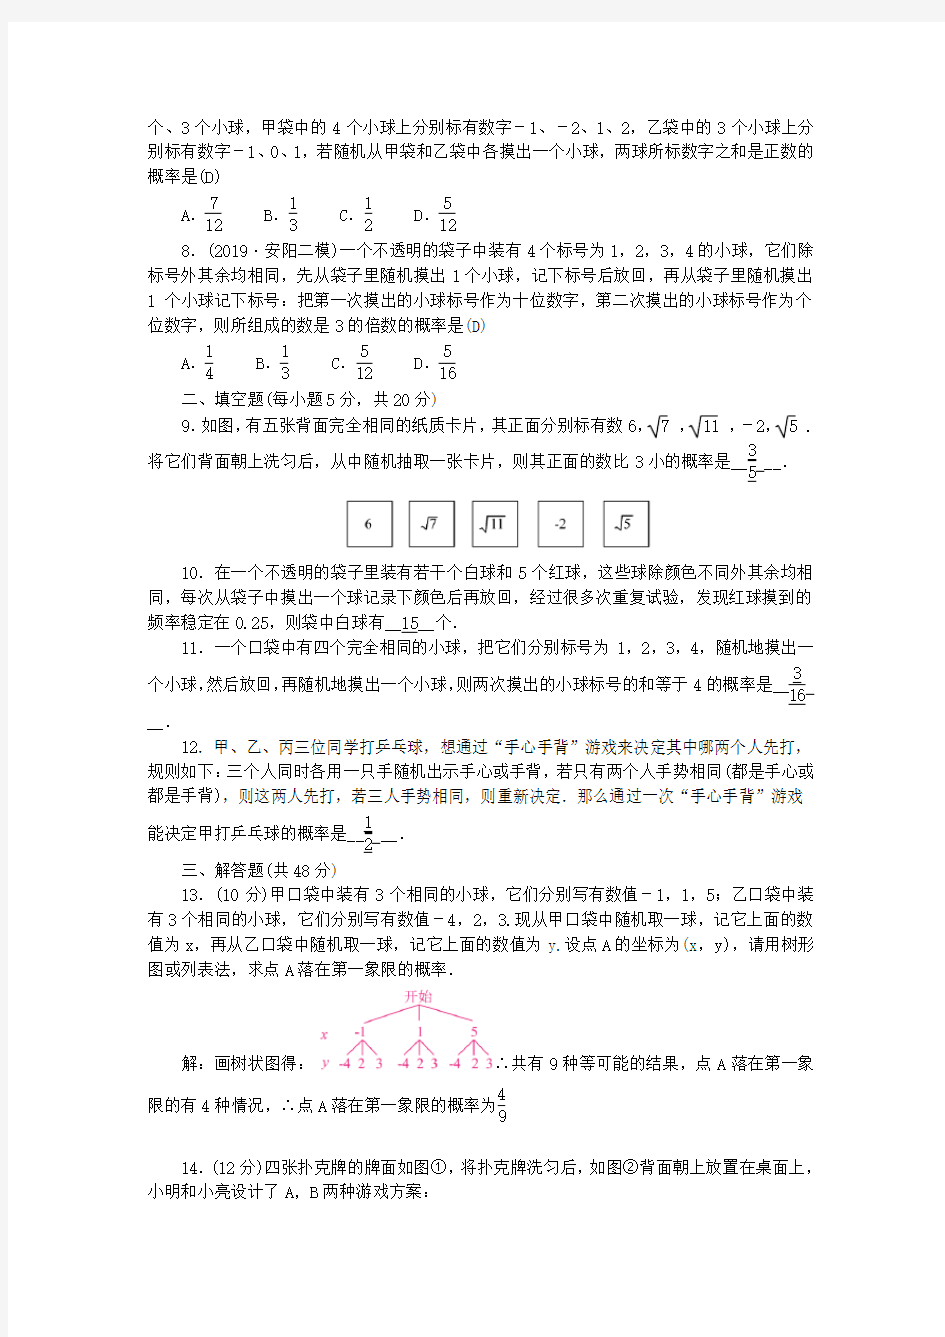 九年级数学上册周周清十检测内容25.1_25.2新版华东师大版